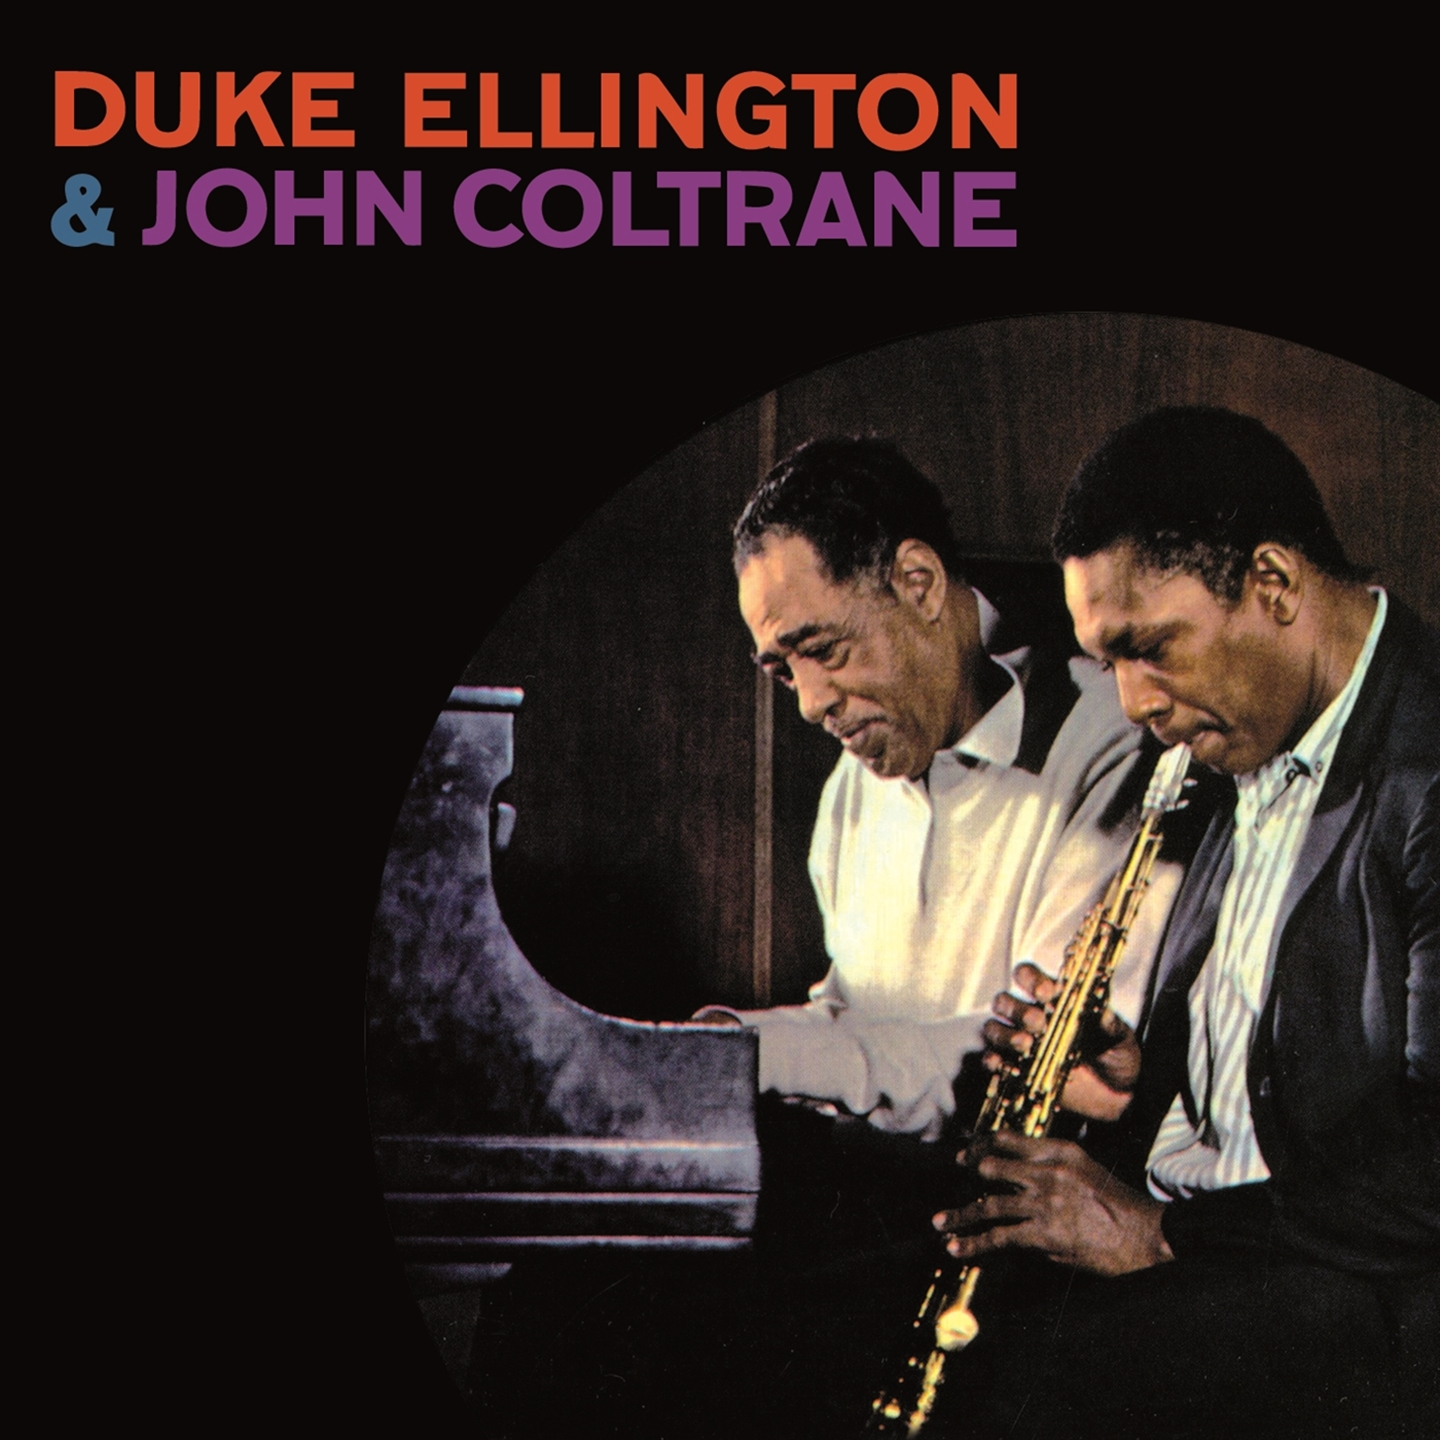 DUKE ELLINGTON & JOHN COLTRANE (+ 5 BONUS TRACKS)